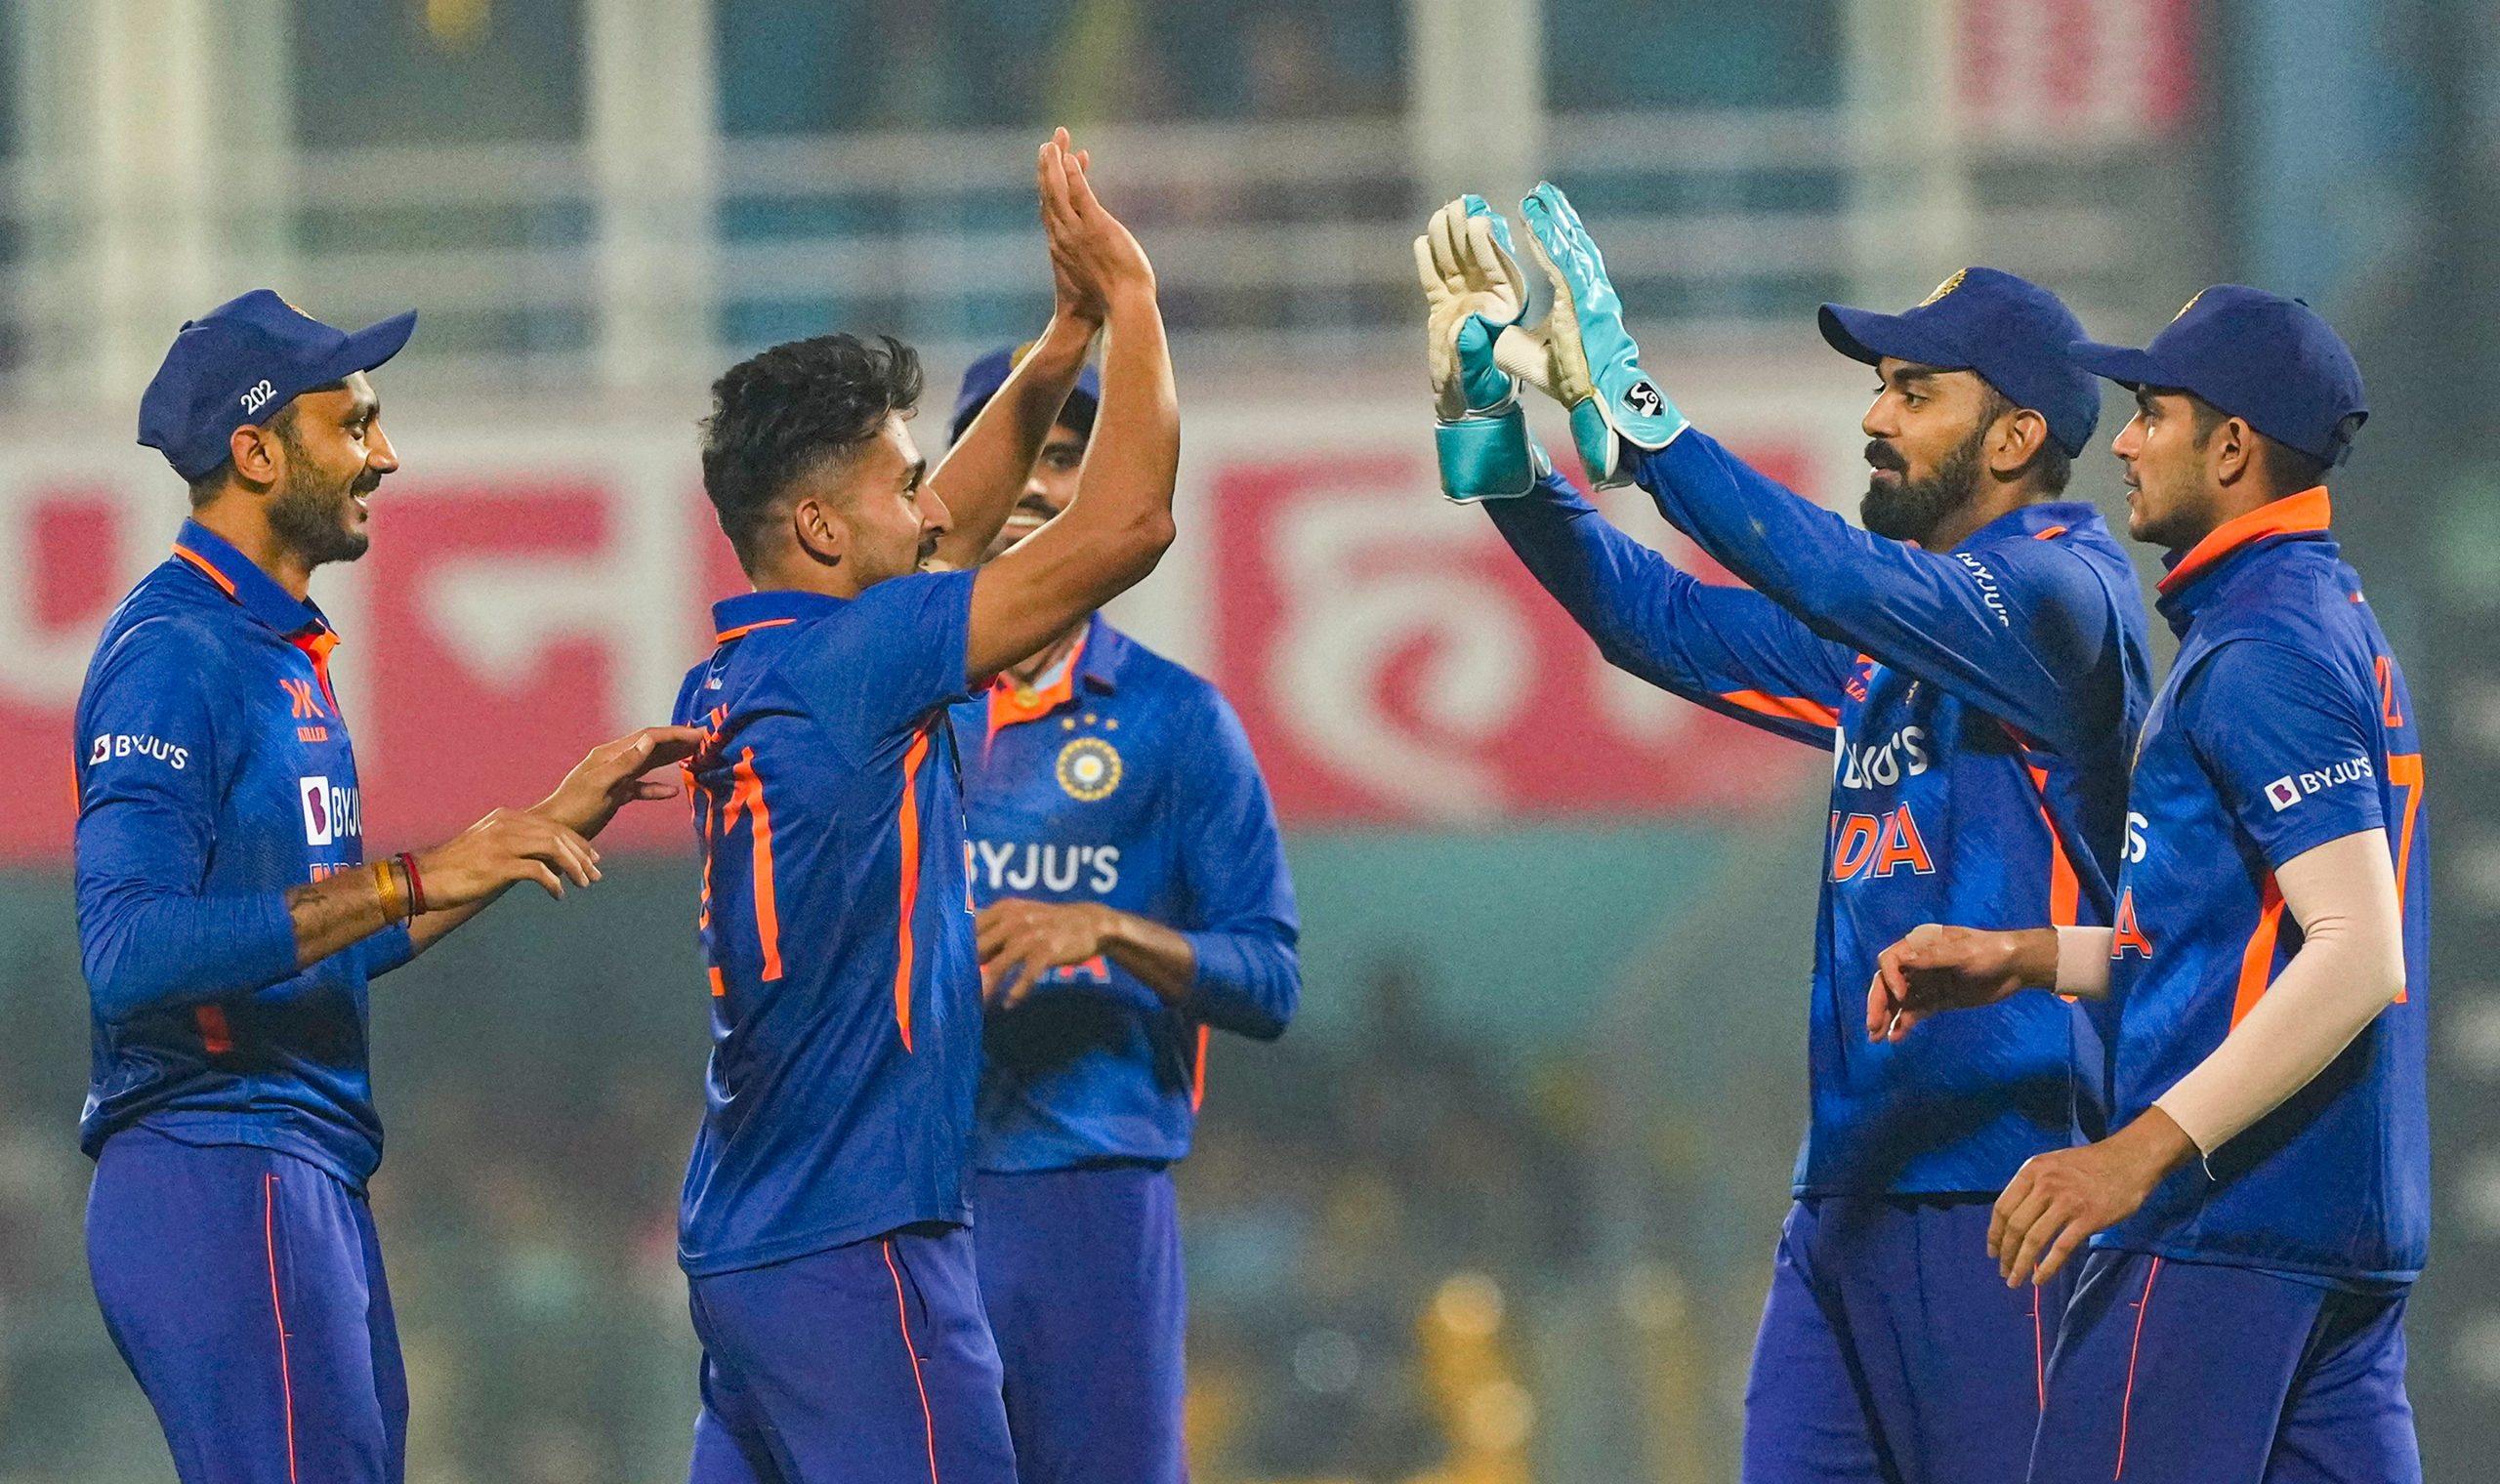 IND vs SL 2nd ODI, Eden Gardens Kolkata Pitch Report in Hindi: कोलकाता के ईडन गार्डन्स की पिच रिपोर्ट देखें